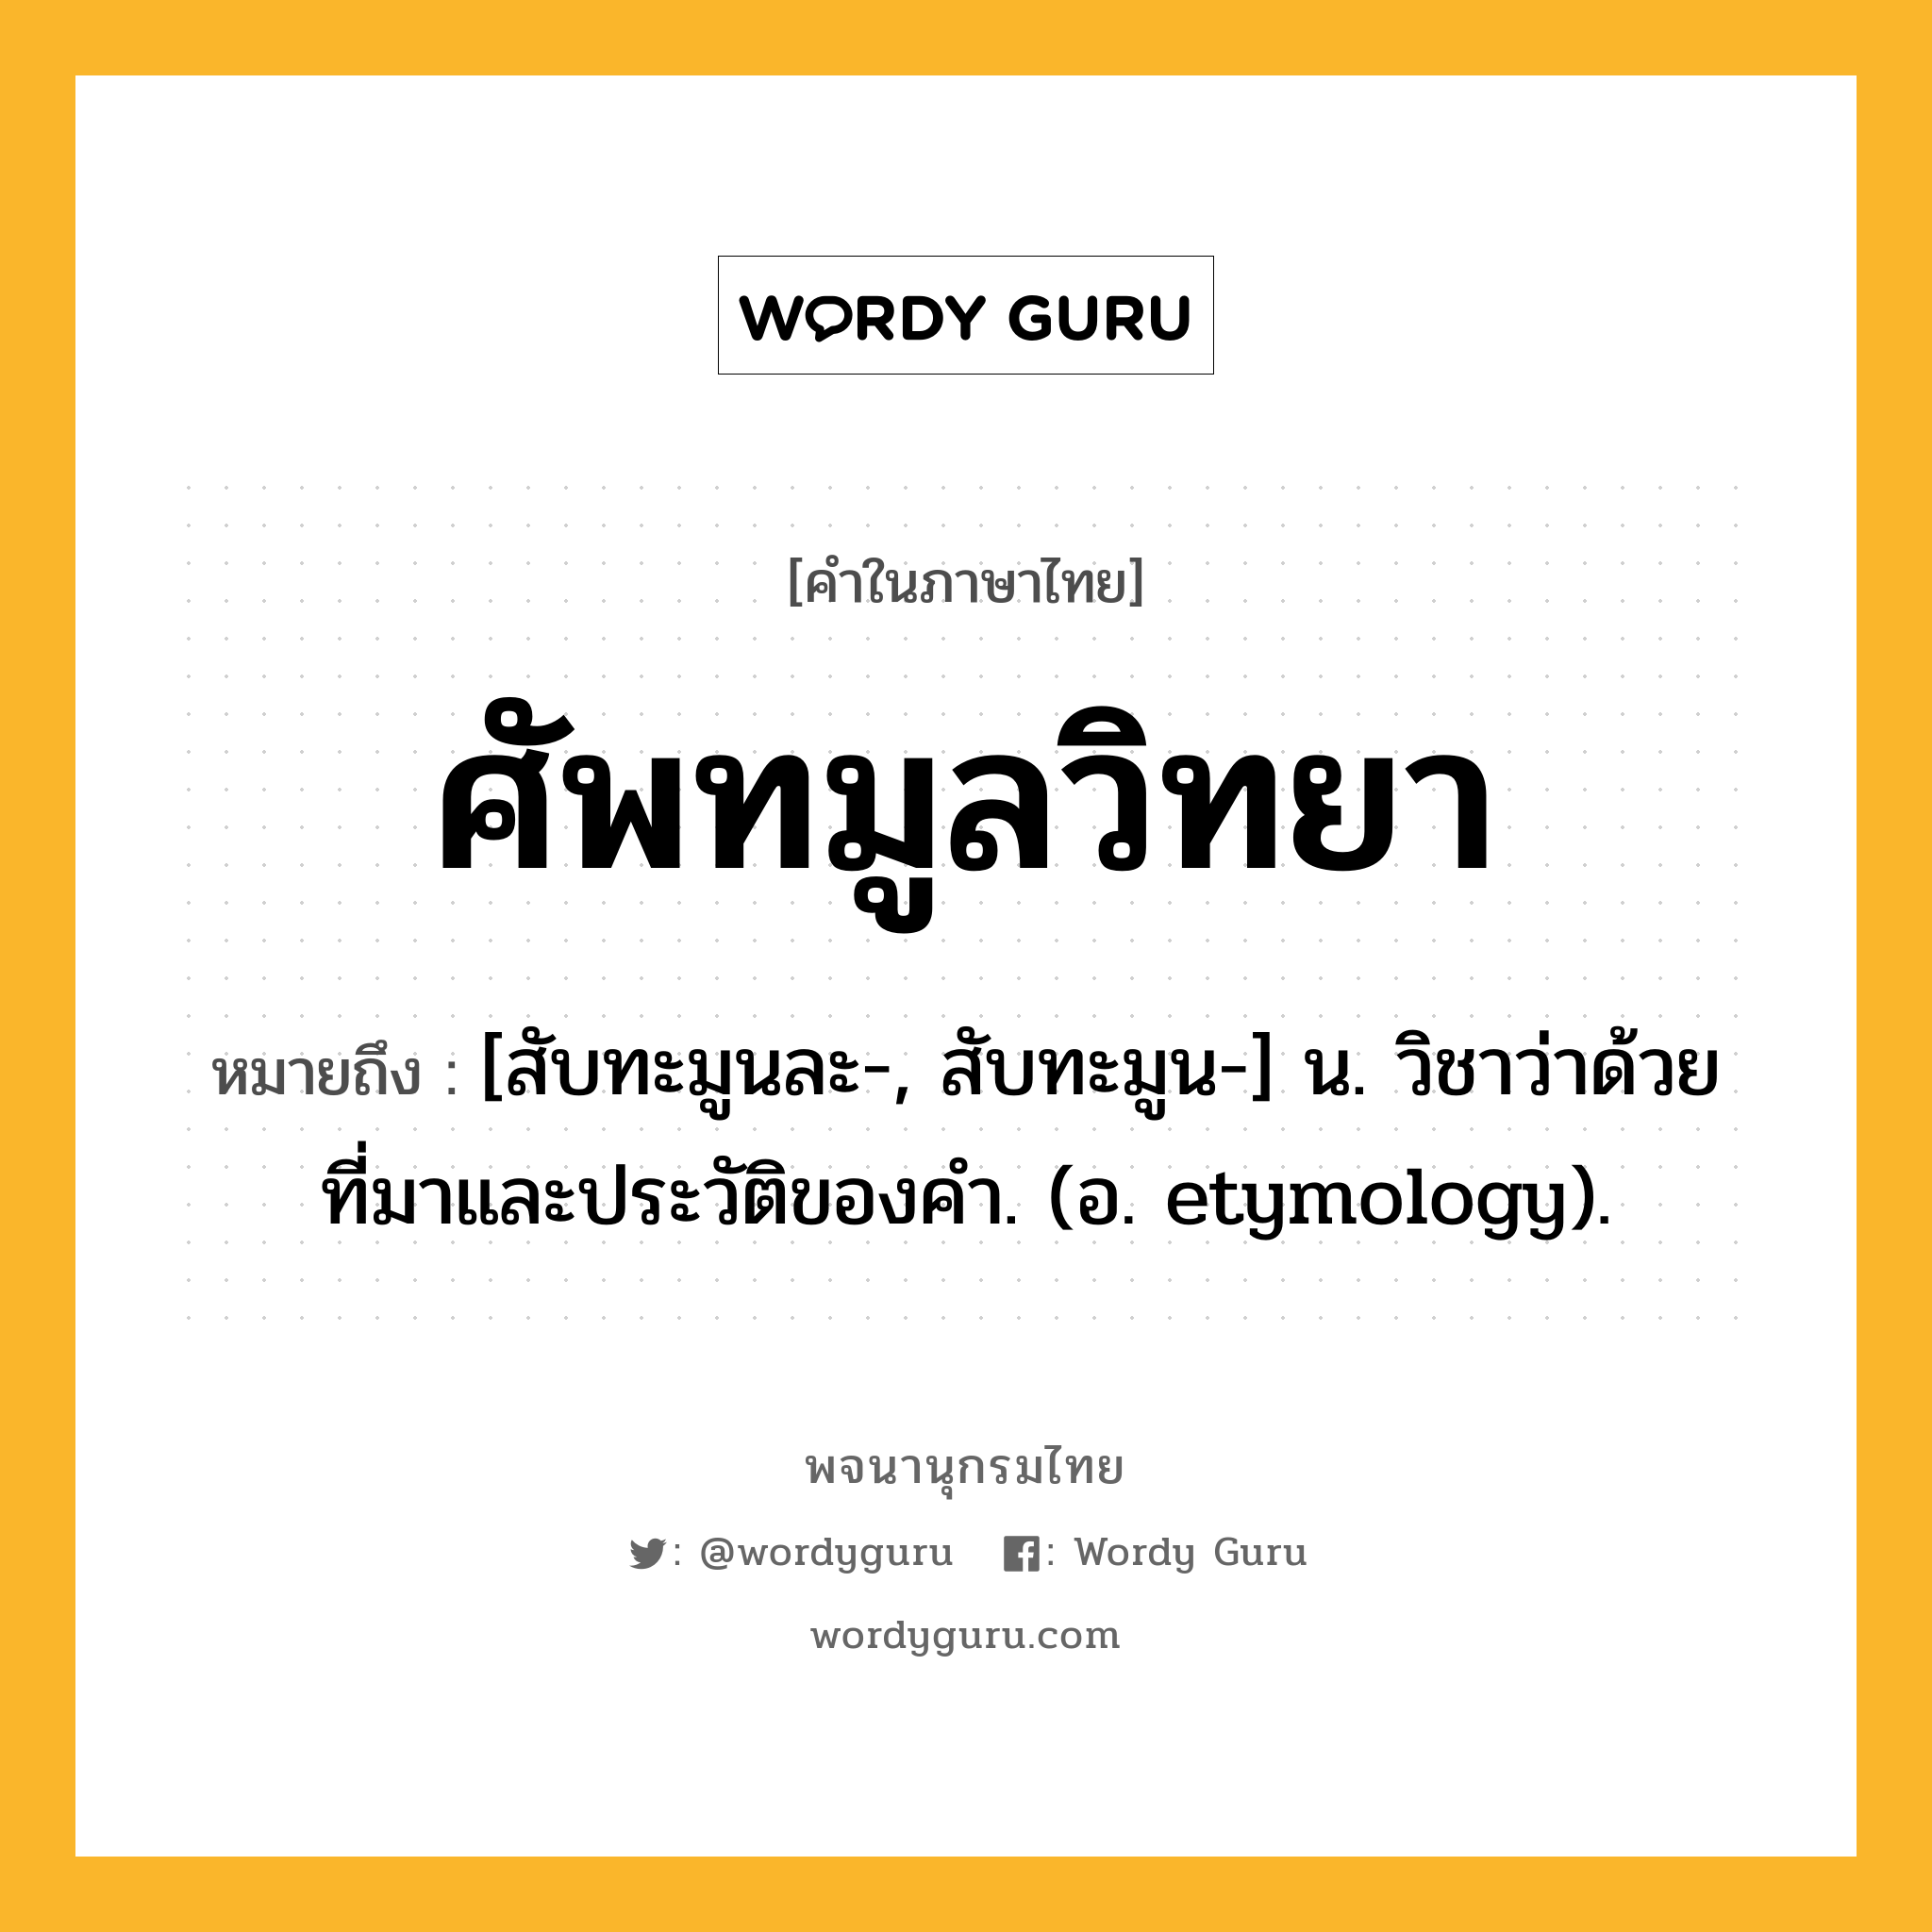 ศัพทมูลวิทยา หมายถึงอะไร?, คำในภาษาไทย ศัพทมูลวิทยา หมายถึง [สับทะมูนละ-, สับทะมูน-] น. วิชาว่าด้วยที่มาและประวัติของคํา. (อ. etymology).